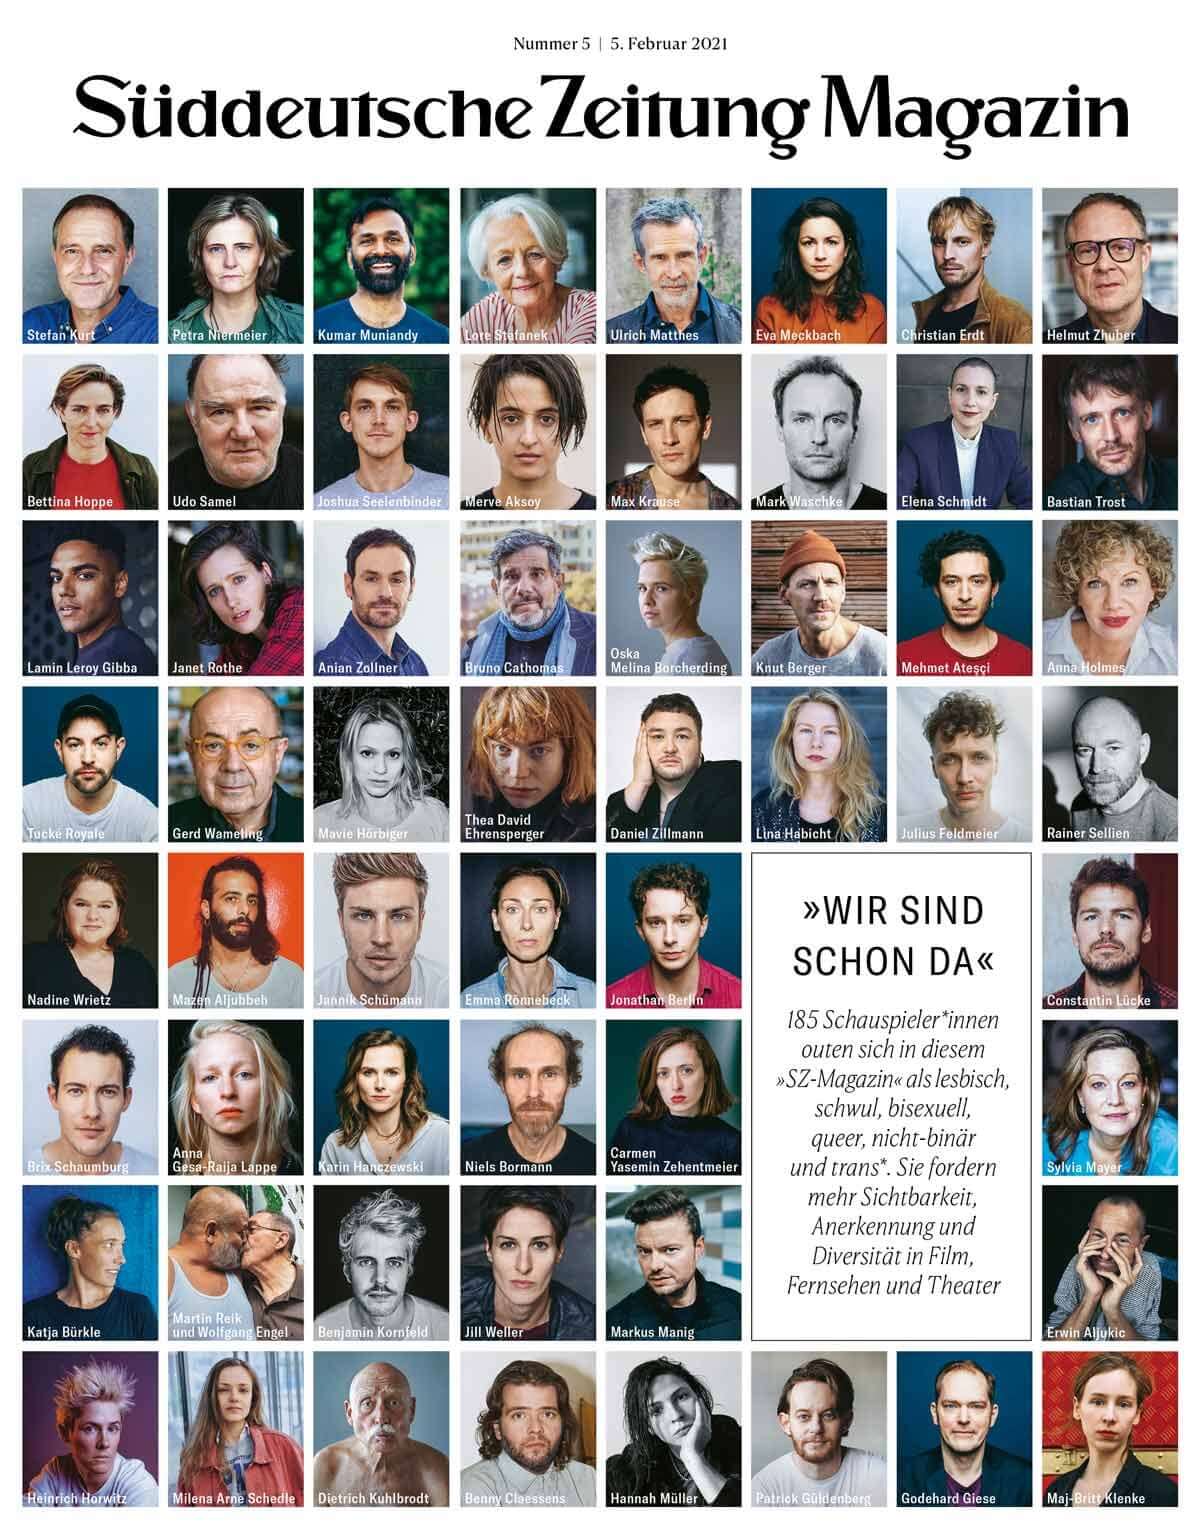 Germania, 185 attori e attrici fanno coming out con uno storico manifesto d'inclusione per cinema, tv e teatro - Germania 185 attori e attrici fanno coming out 2 - Gay.it